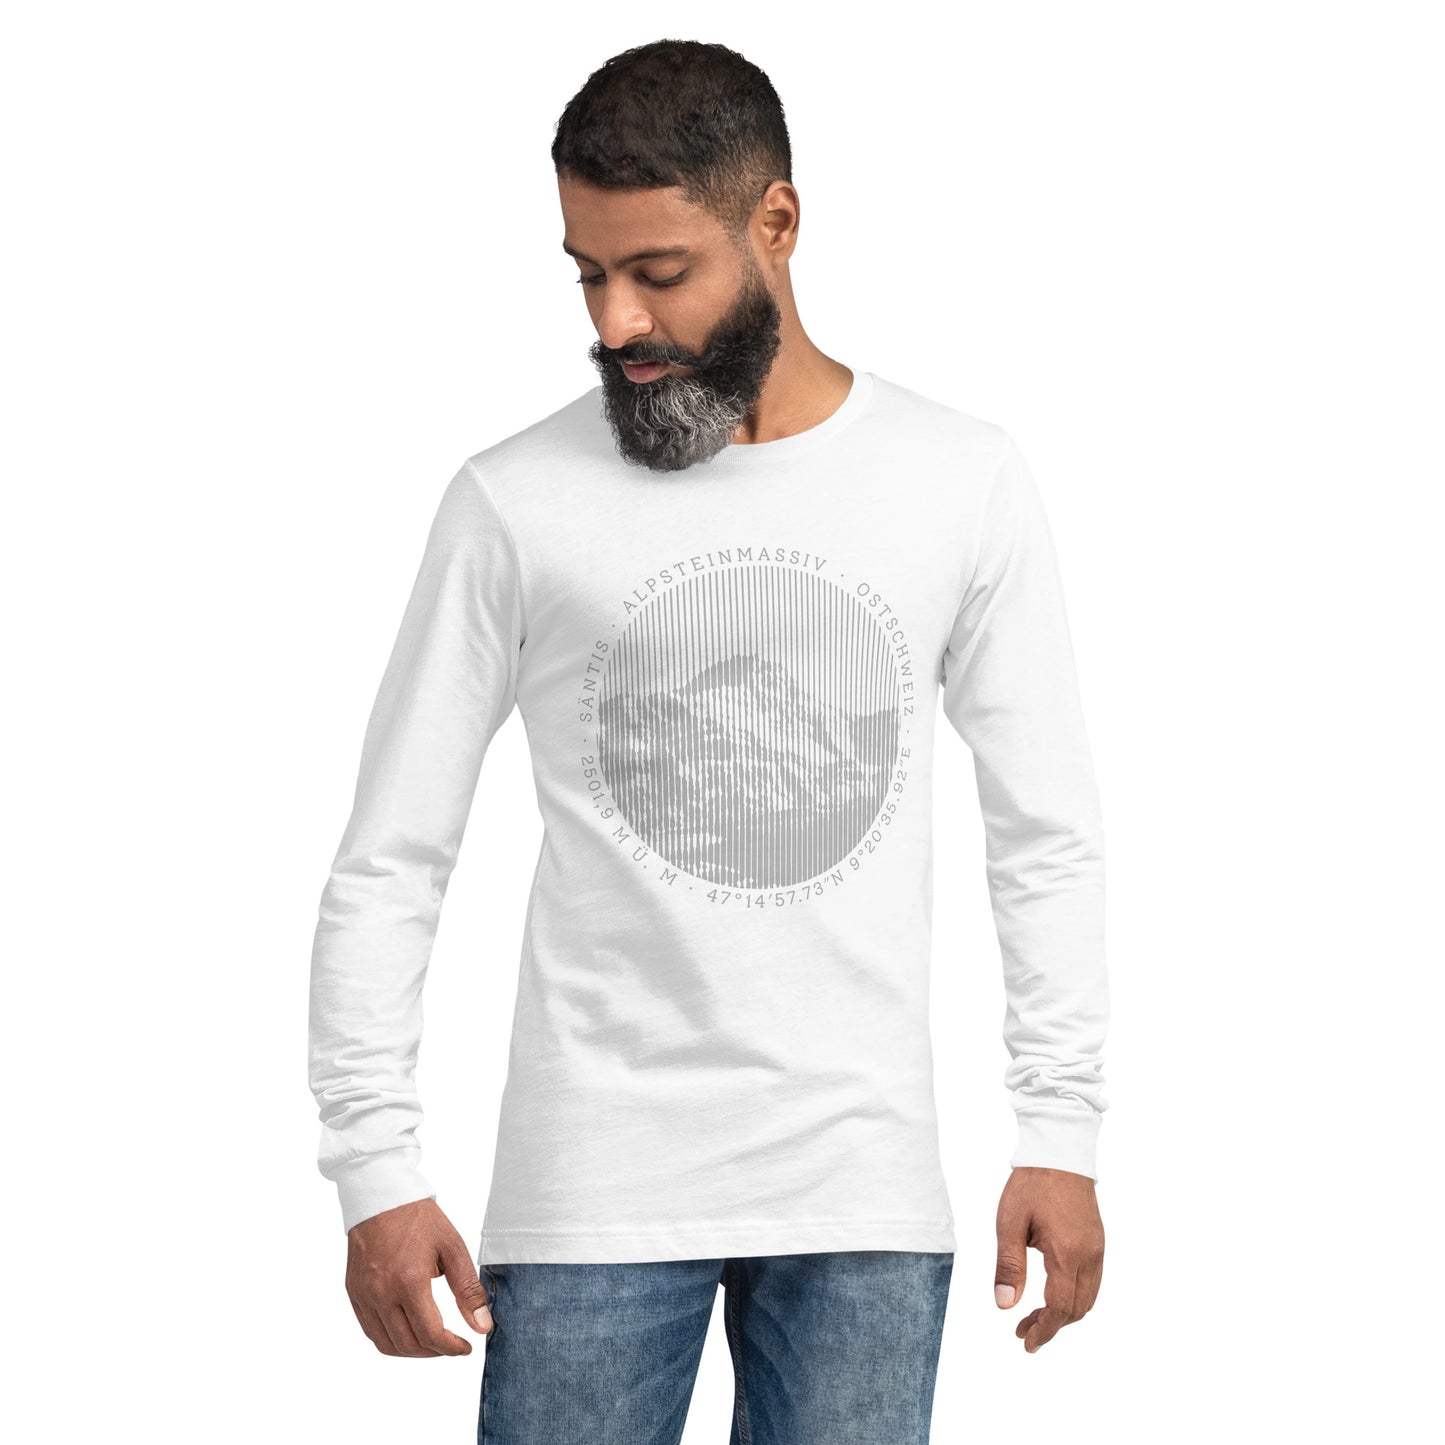 Herren-Langarm-T-Shirt Säntis, weiss